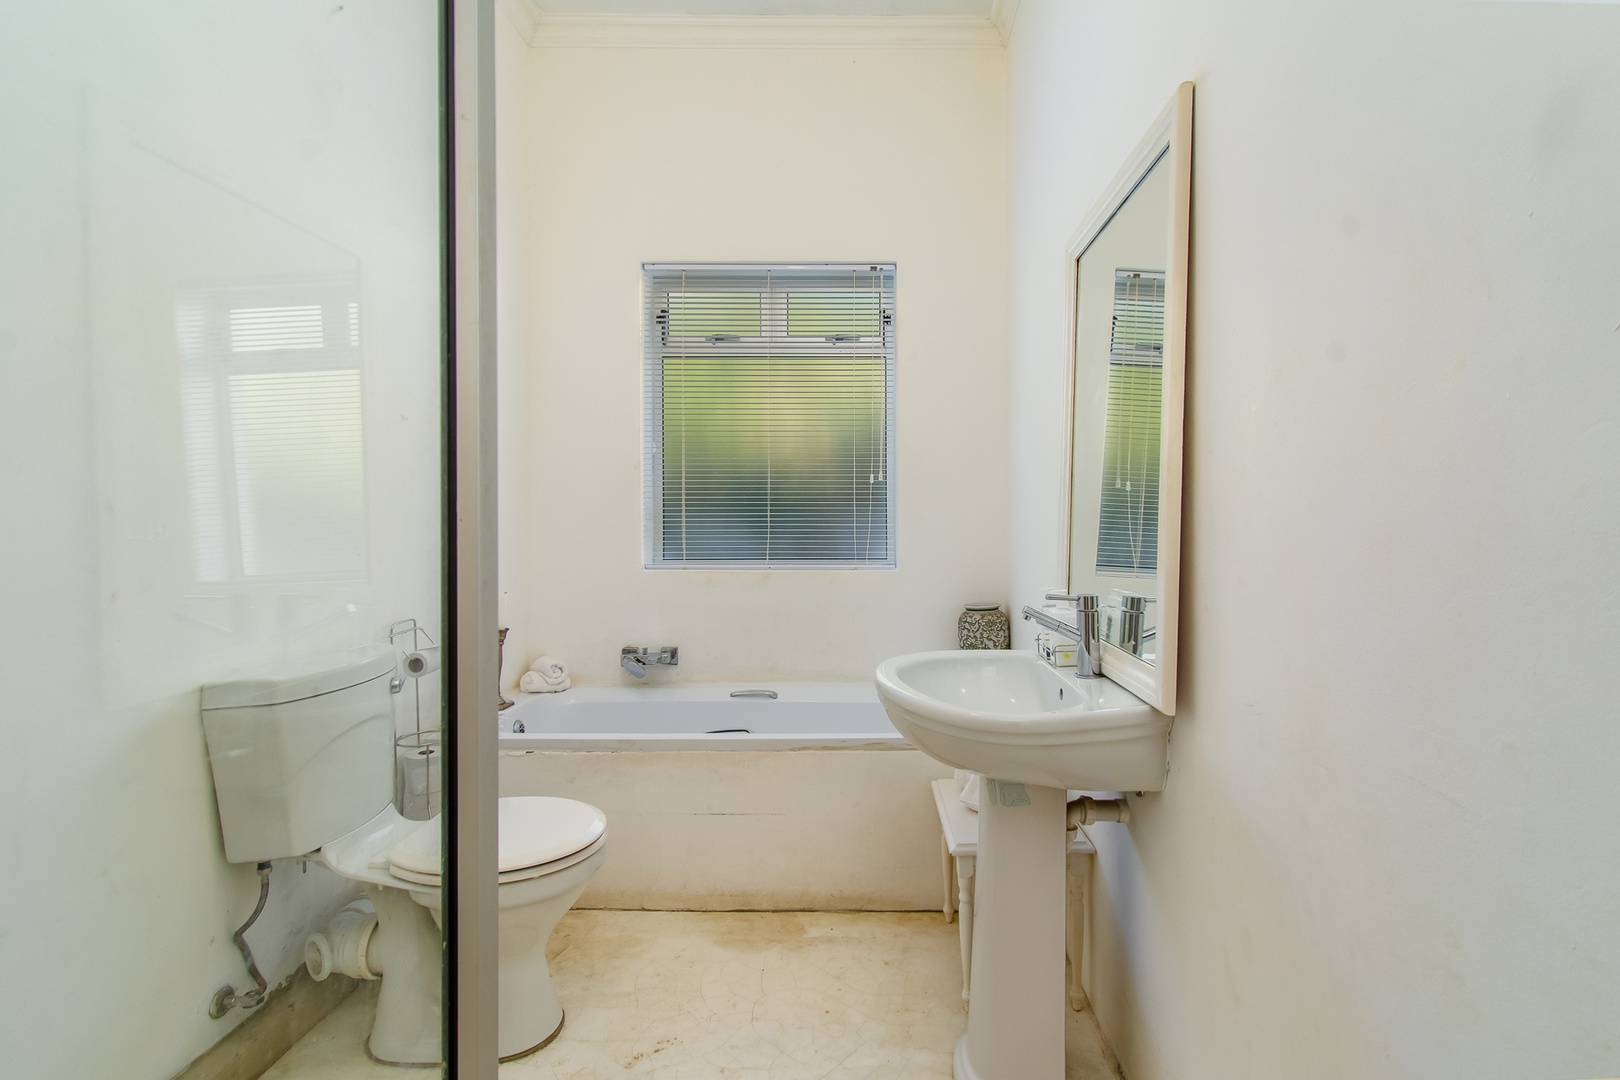 House in Rooi Els - Guest bathroom